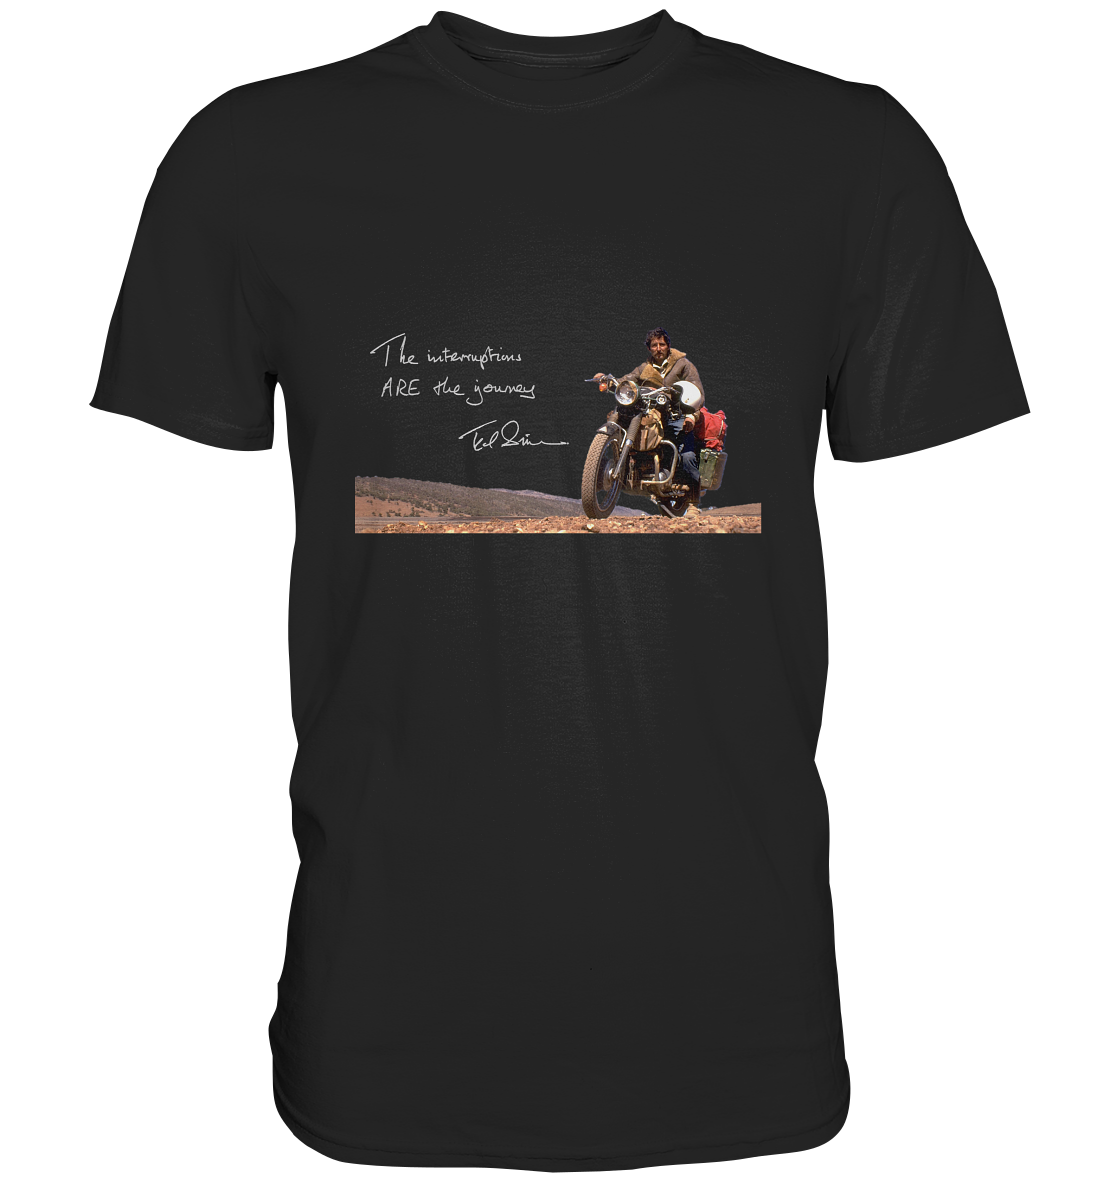 T-Shirt, Herren, men, Ted Simon auf seinem Motorrad, on his motorbike, Jupitalia mit handschriftlichem Zitat, with handwritten quote "The Interruptions are the journey." schwarz, black